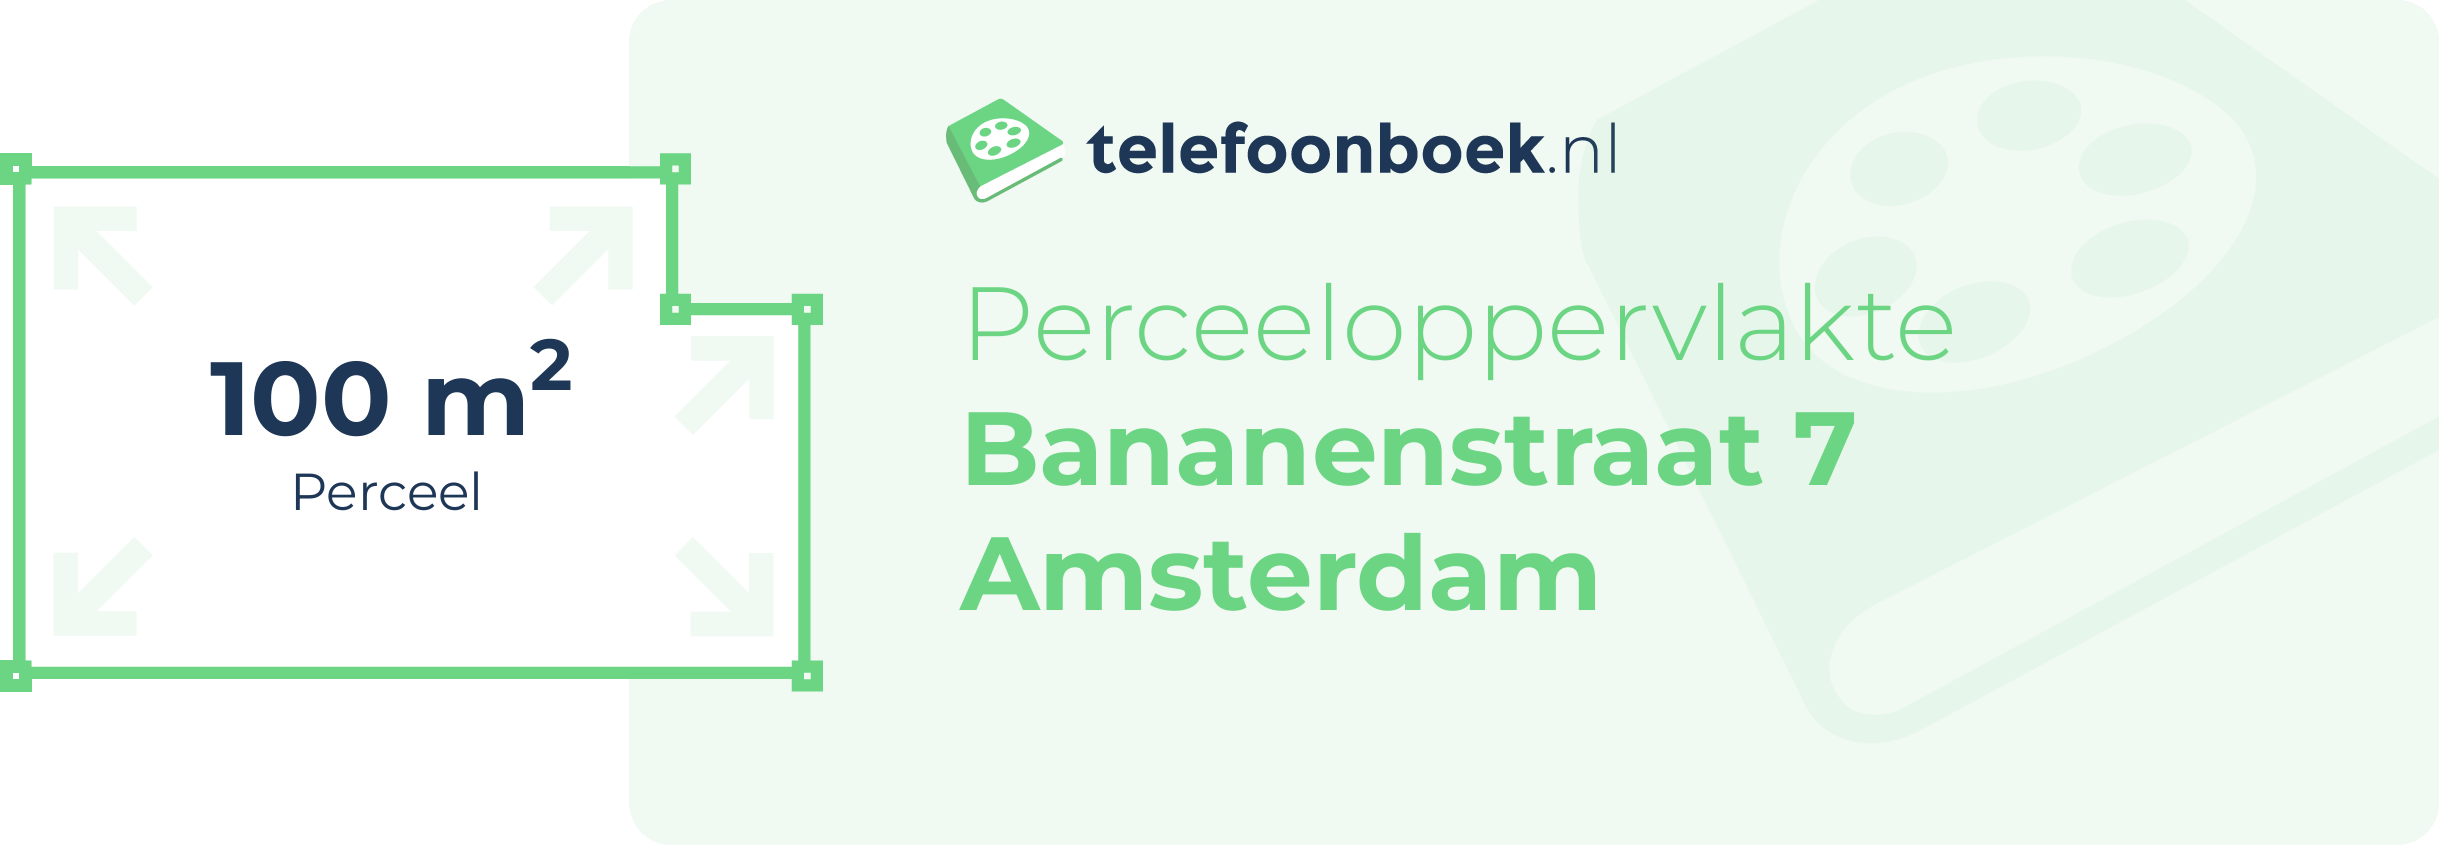 Perceeloppervlakte Bananenstraat 7 Amsterdam